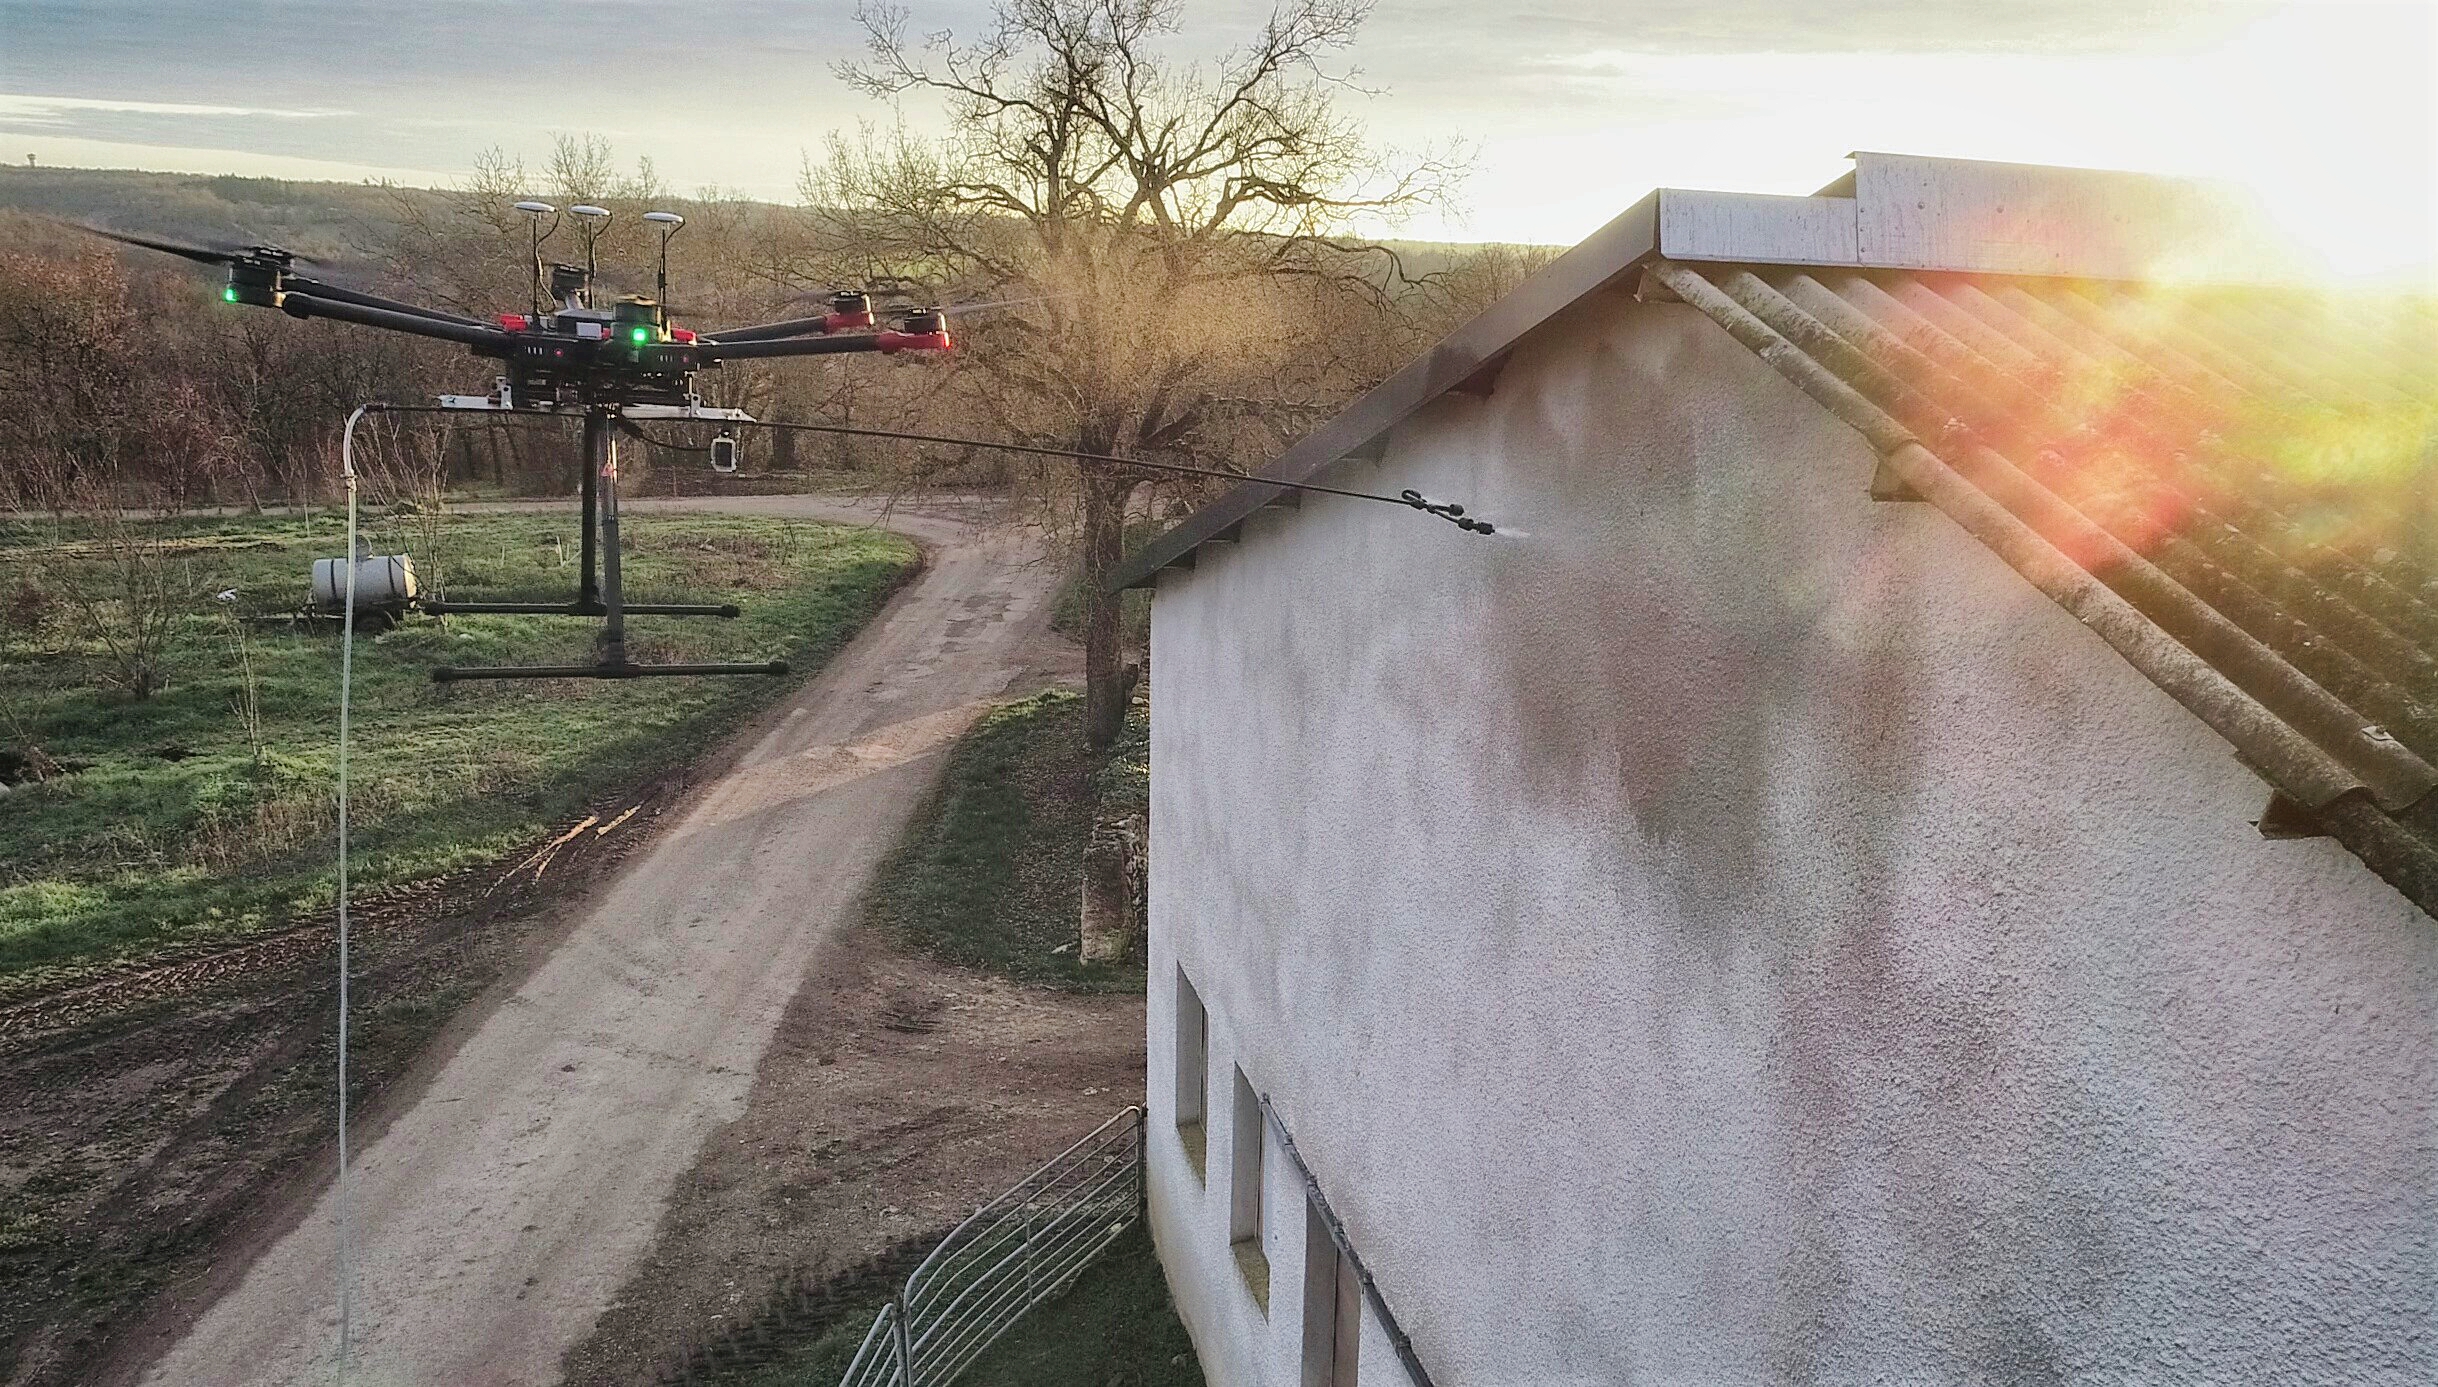 nettoyage d'une facade par drone - société drone des puys